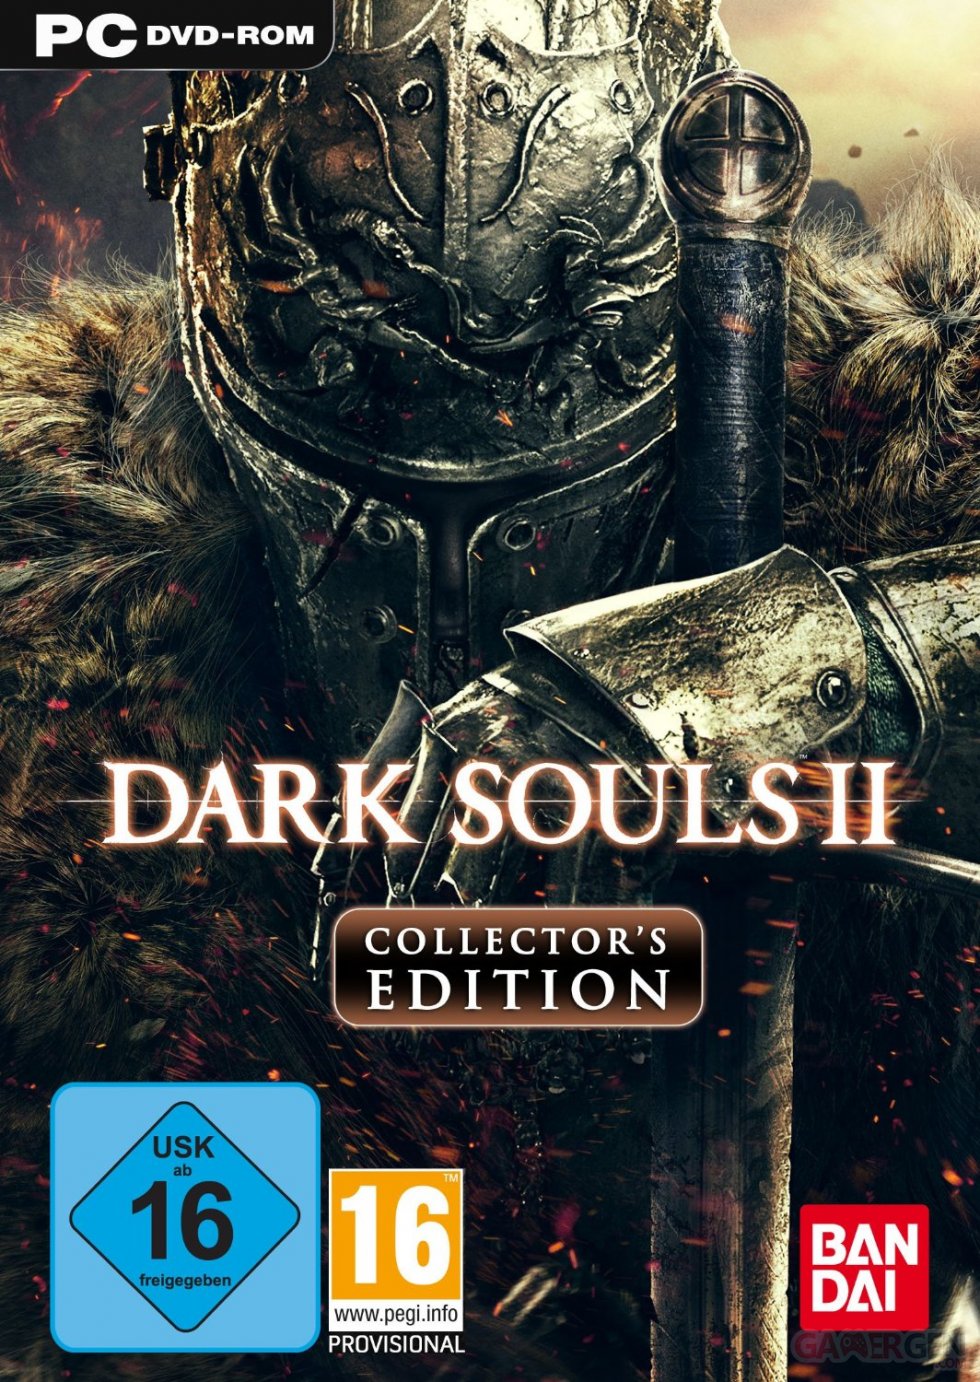 Dark Souls II Collector jaquette PC 11.03.2014  (1)